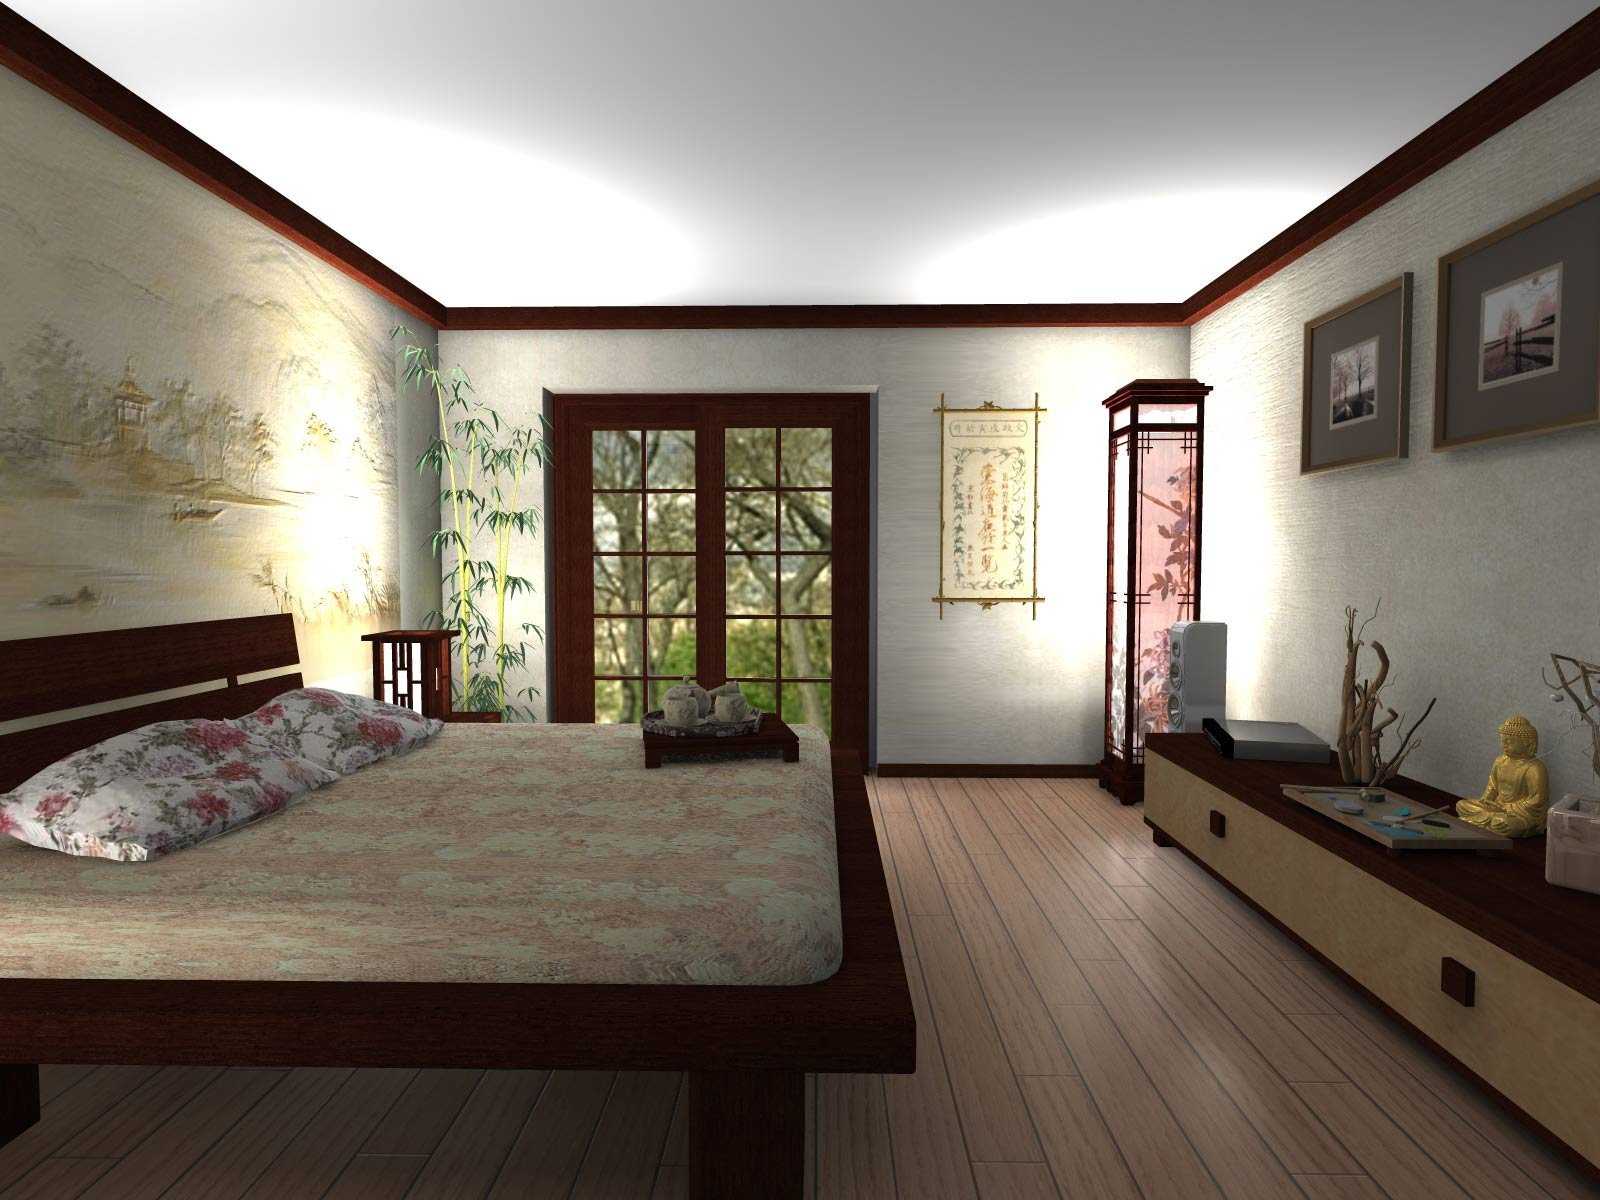 Интерьер спальни в современном стиле (85 фото)